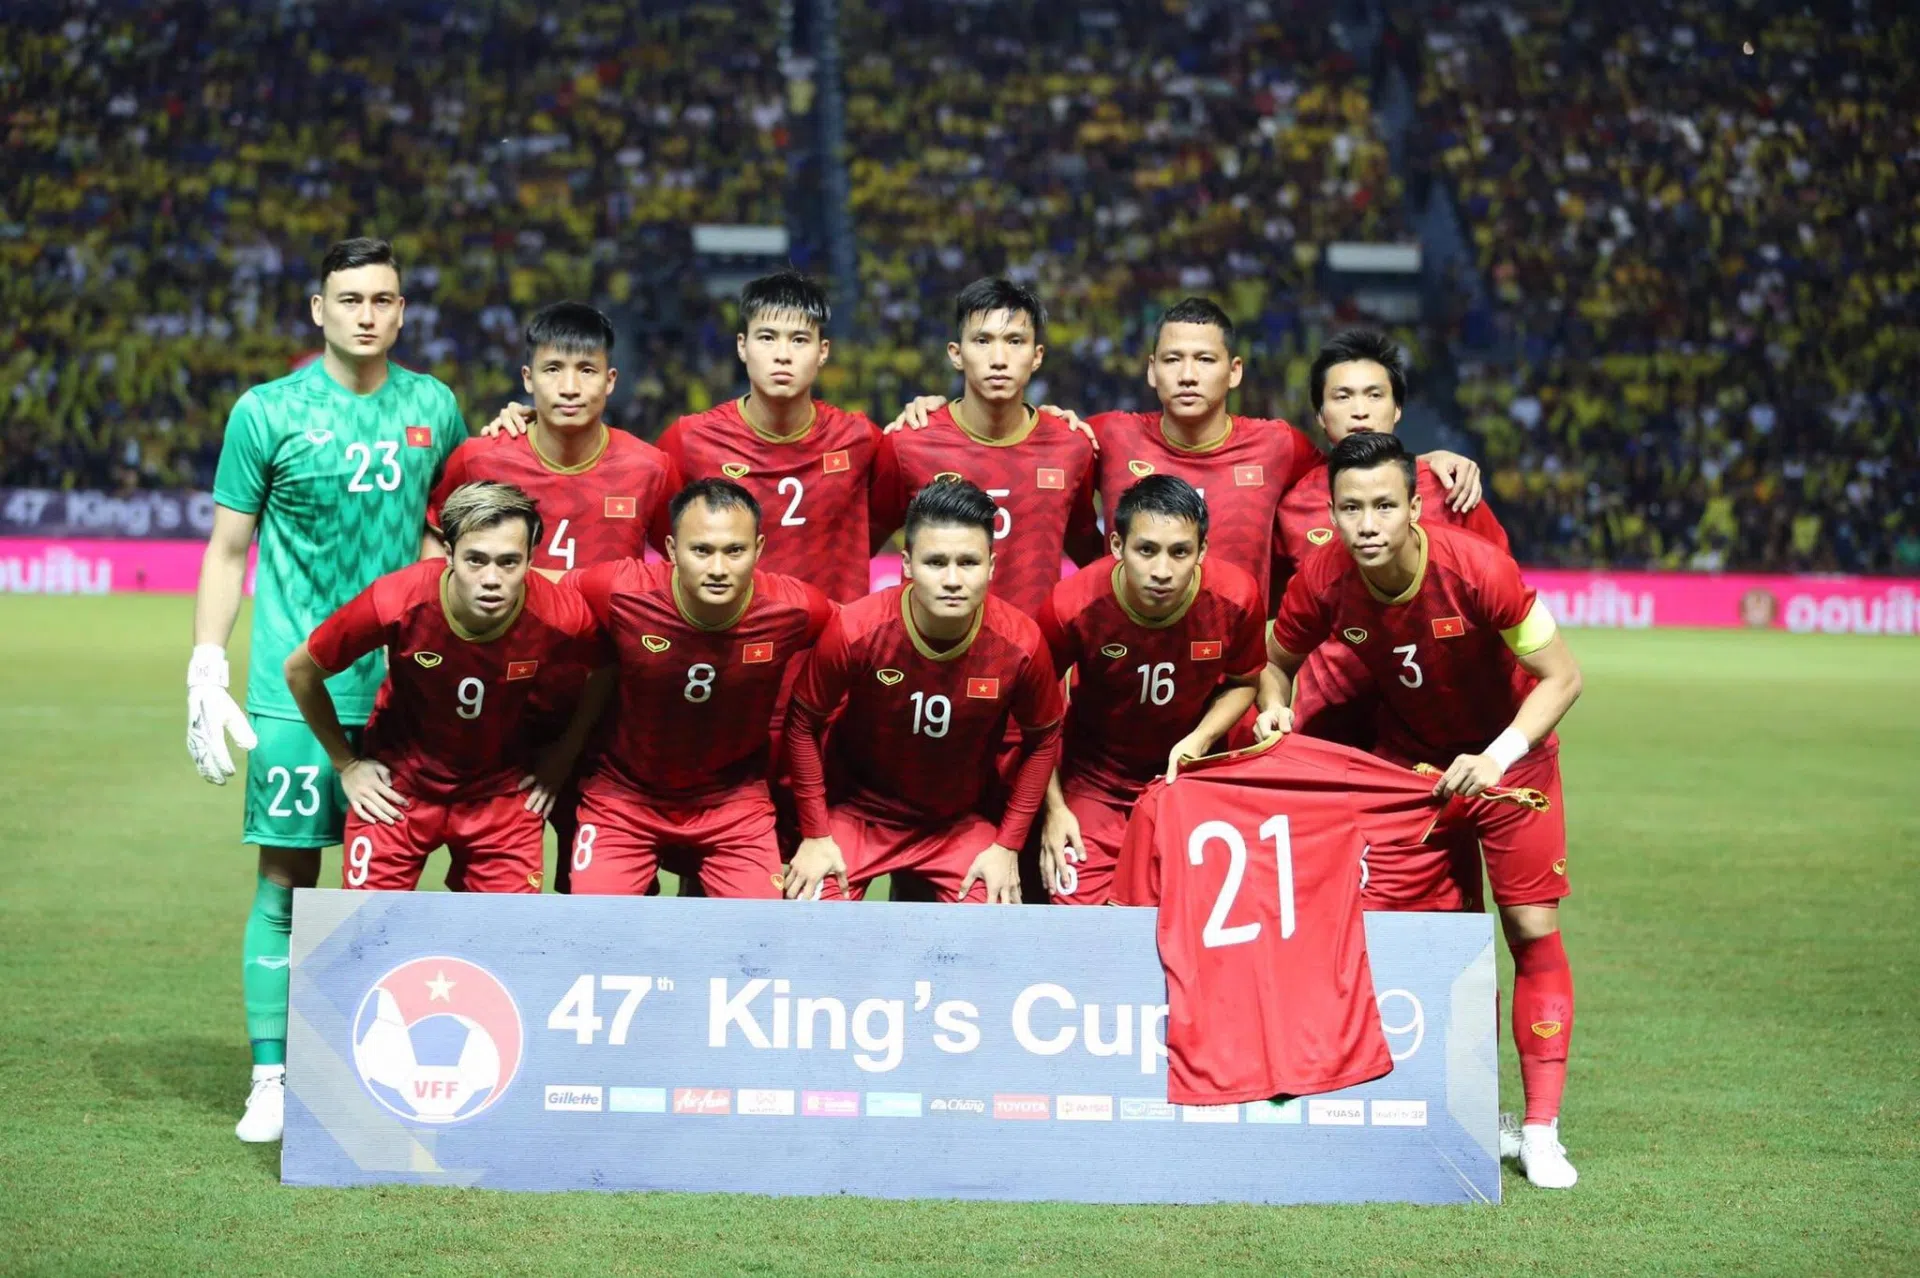 Thái Lan mời đội hơn Việt Nam 2 bậc trên BXH FIFA dự King's Cup 